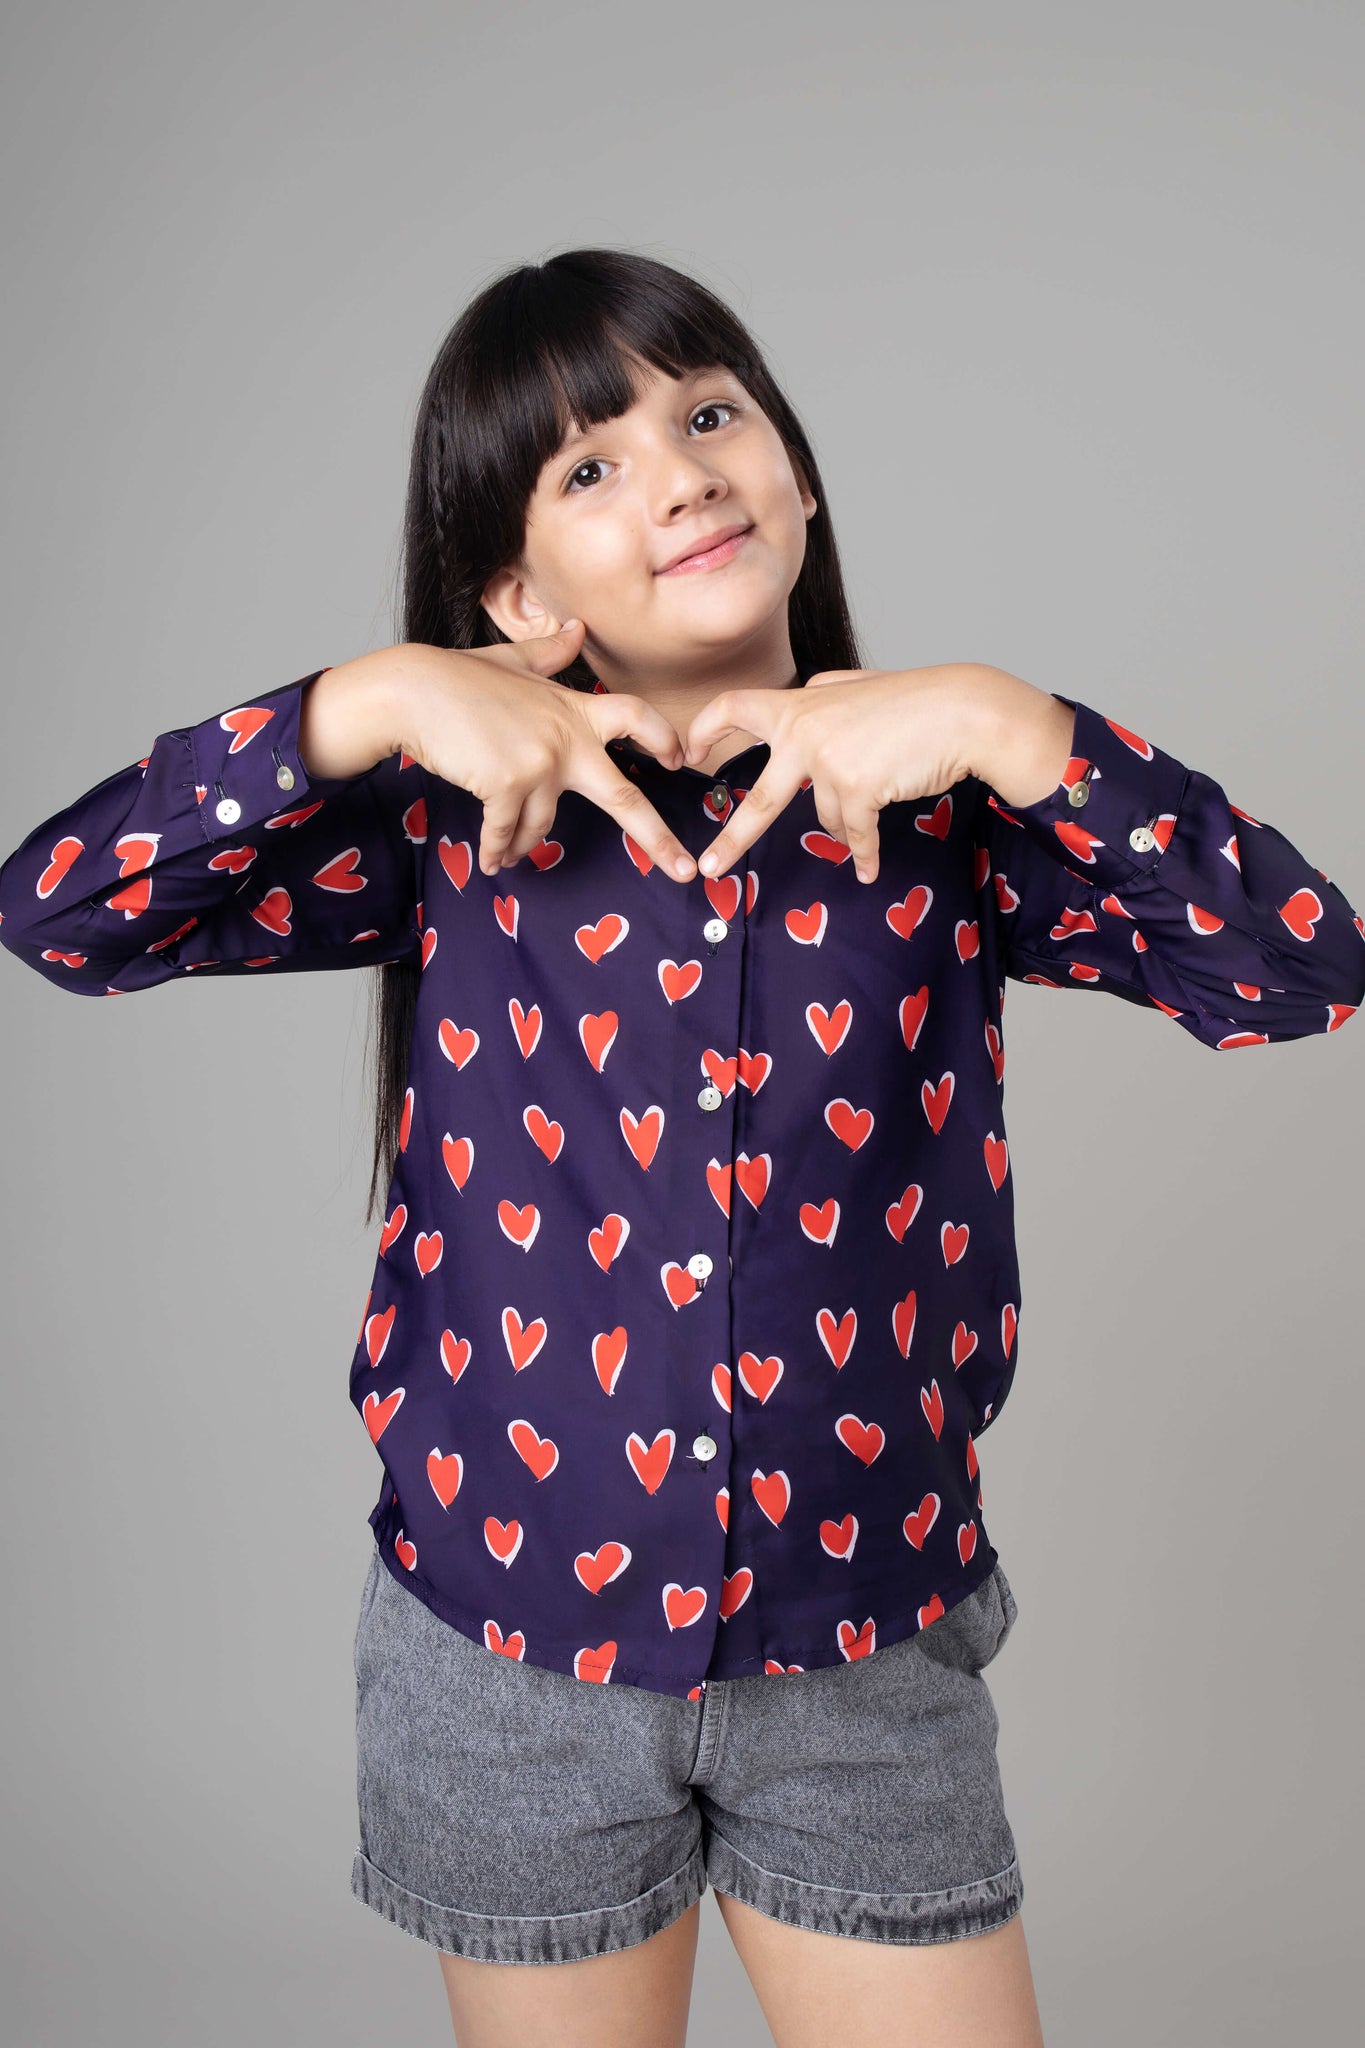 Trendy Heart Shirt For Girls